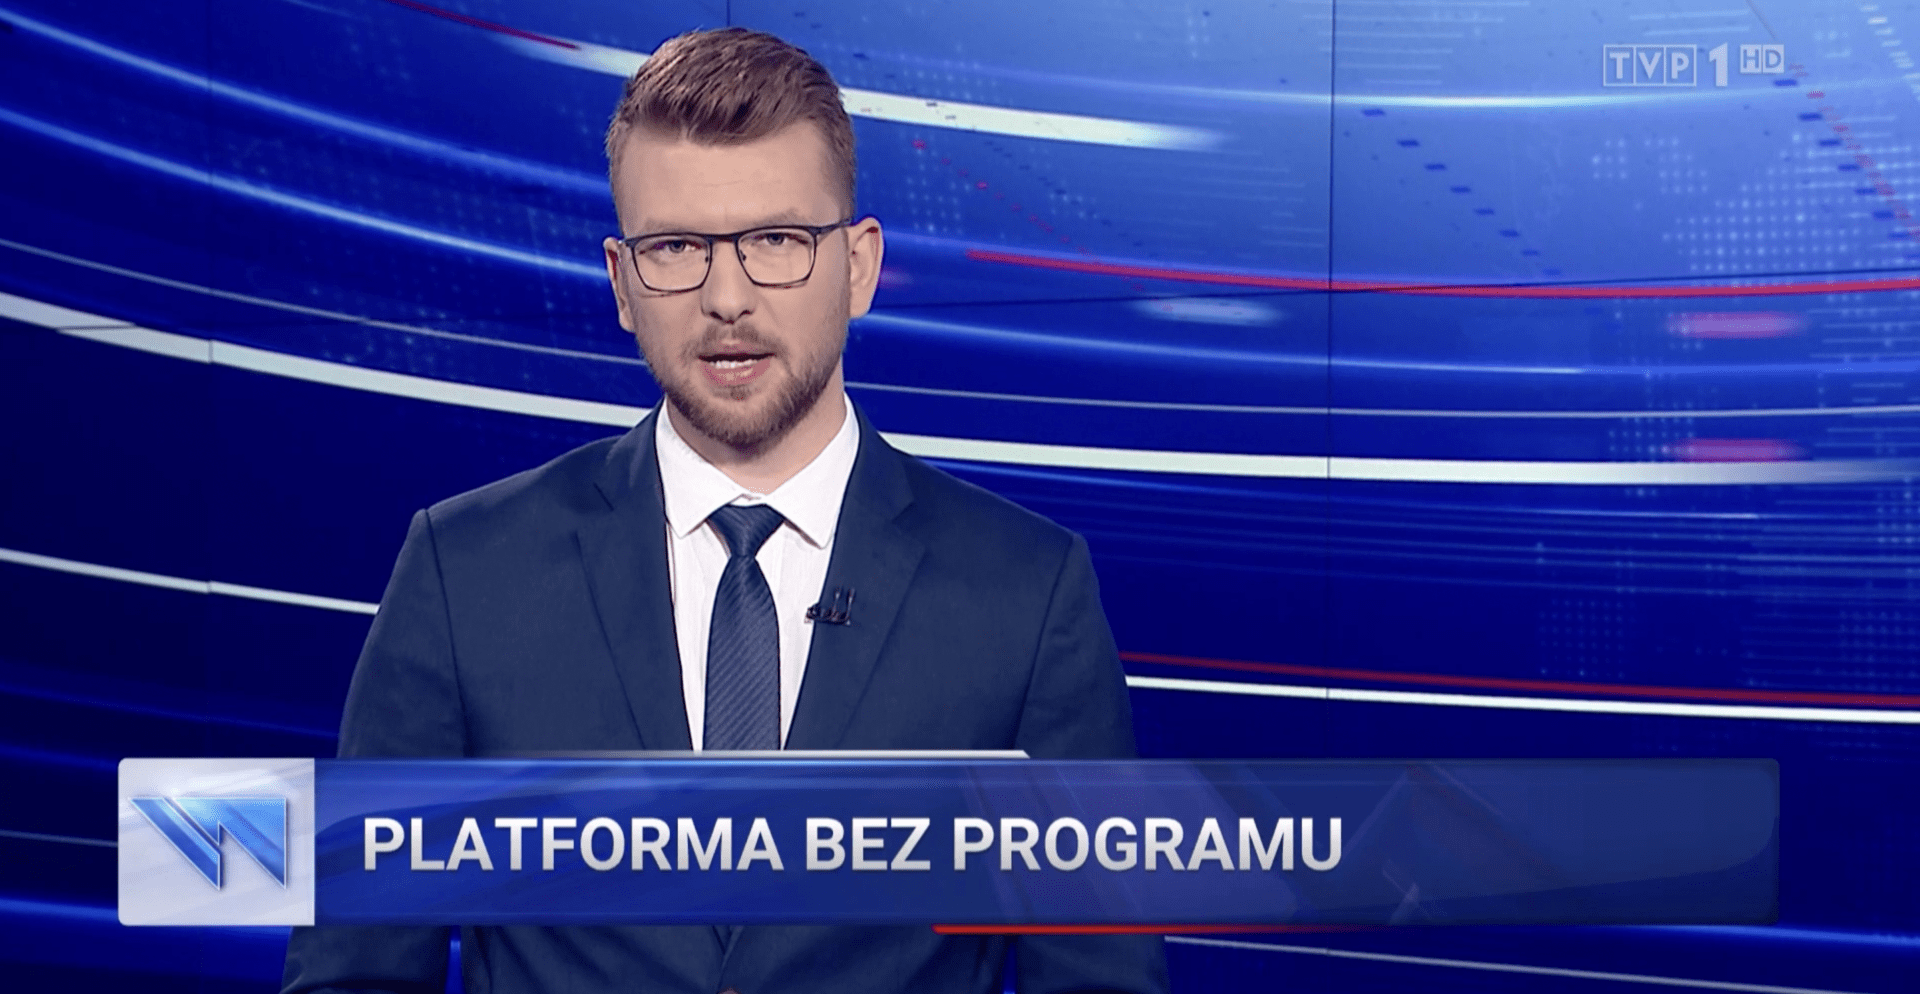 Zrzut ekranu z fragmentu „Wiadomości” TVP1 zamieszczonego na stronie wiadomosci.tvp.pl. Widoczny jest mężczyzna w okularach, w białej koszuli, granatowej marynarce i krawacie. Na dole widnieje tzw. pasek o treści „PLATFORMA BEZ PROGRAMU”.